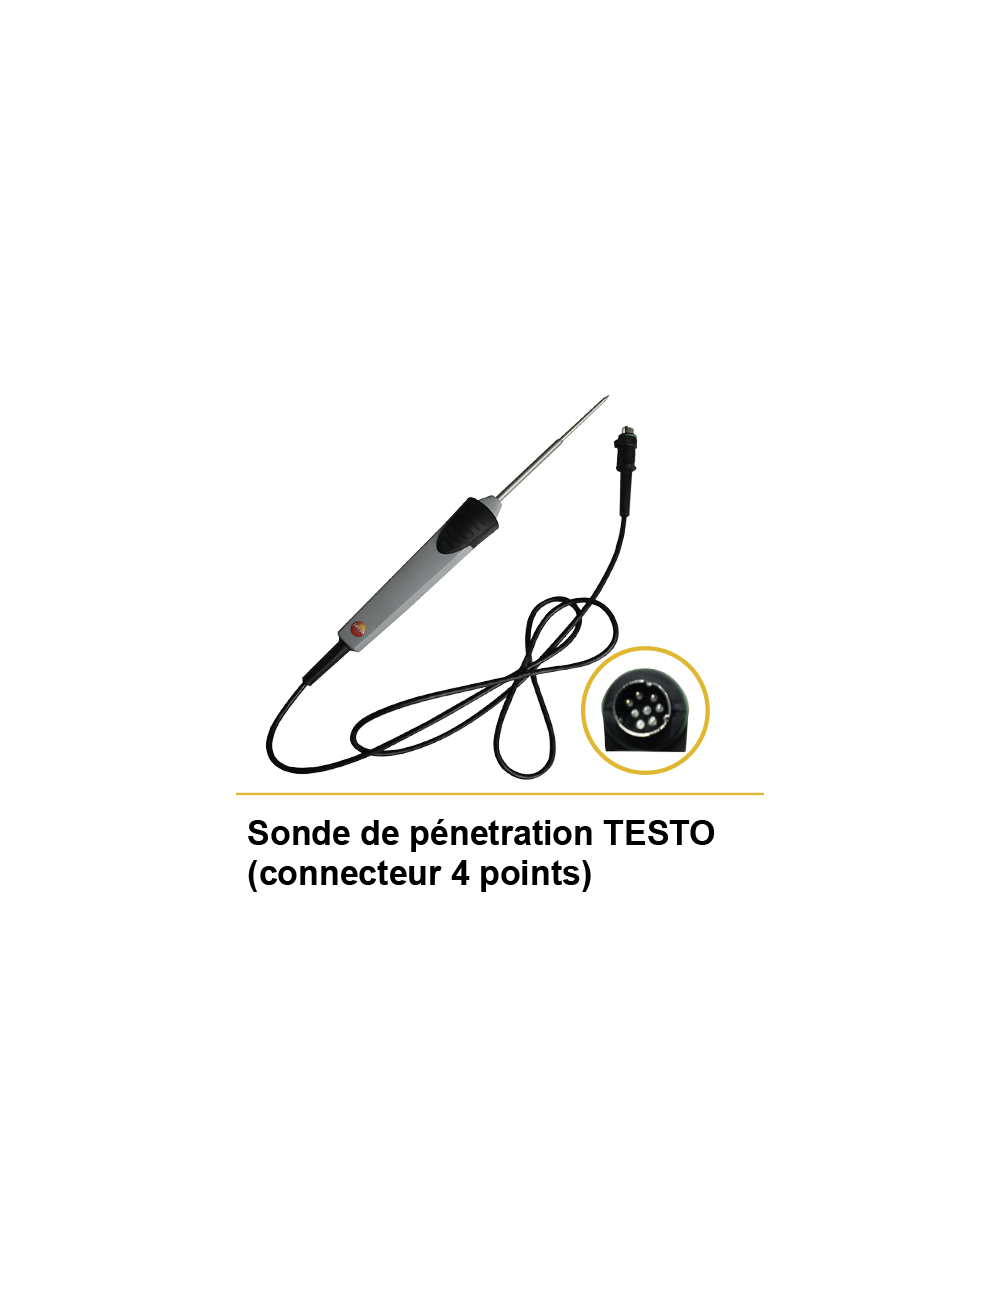 Sonde de pénétration TESTO (connecteur 4 points)